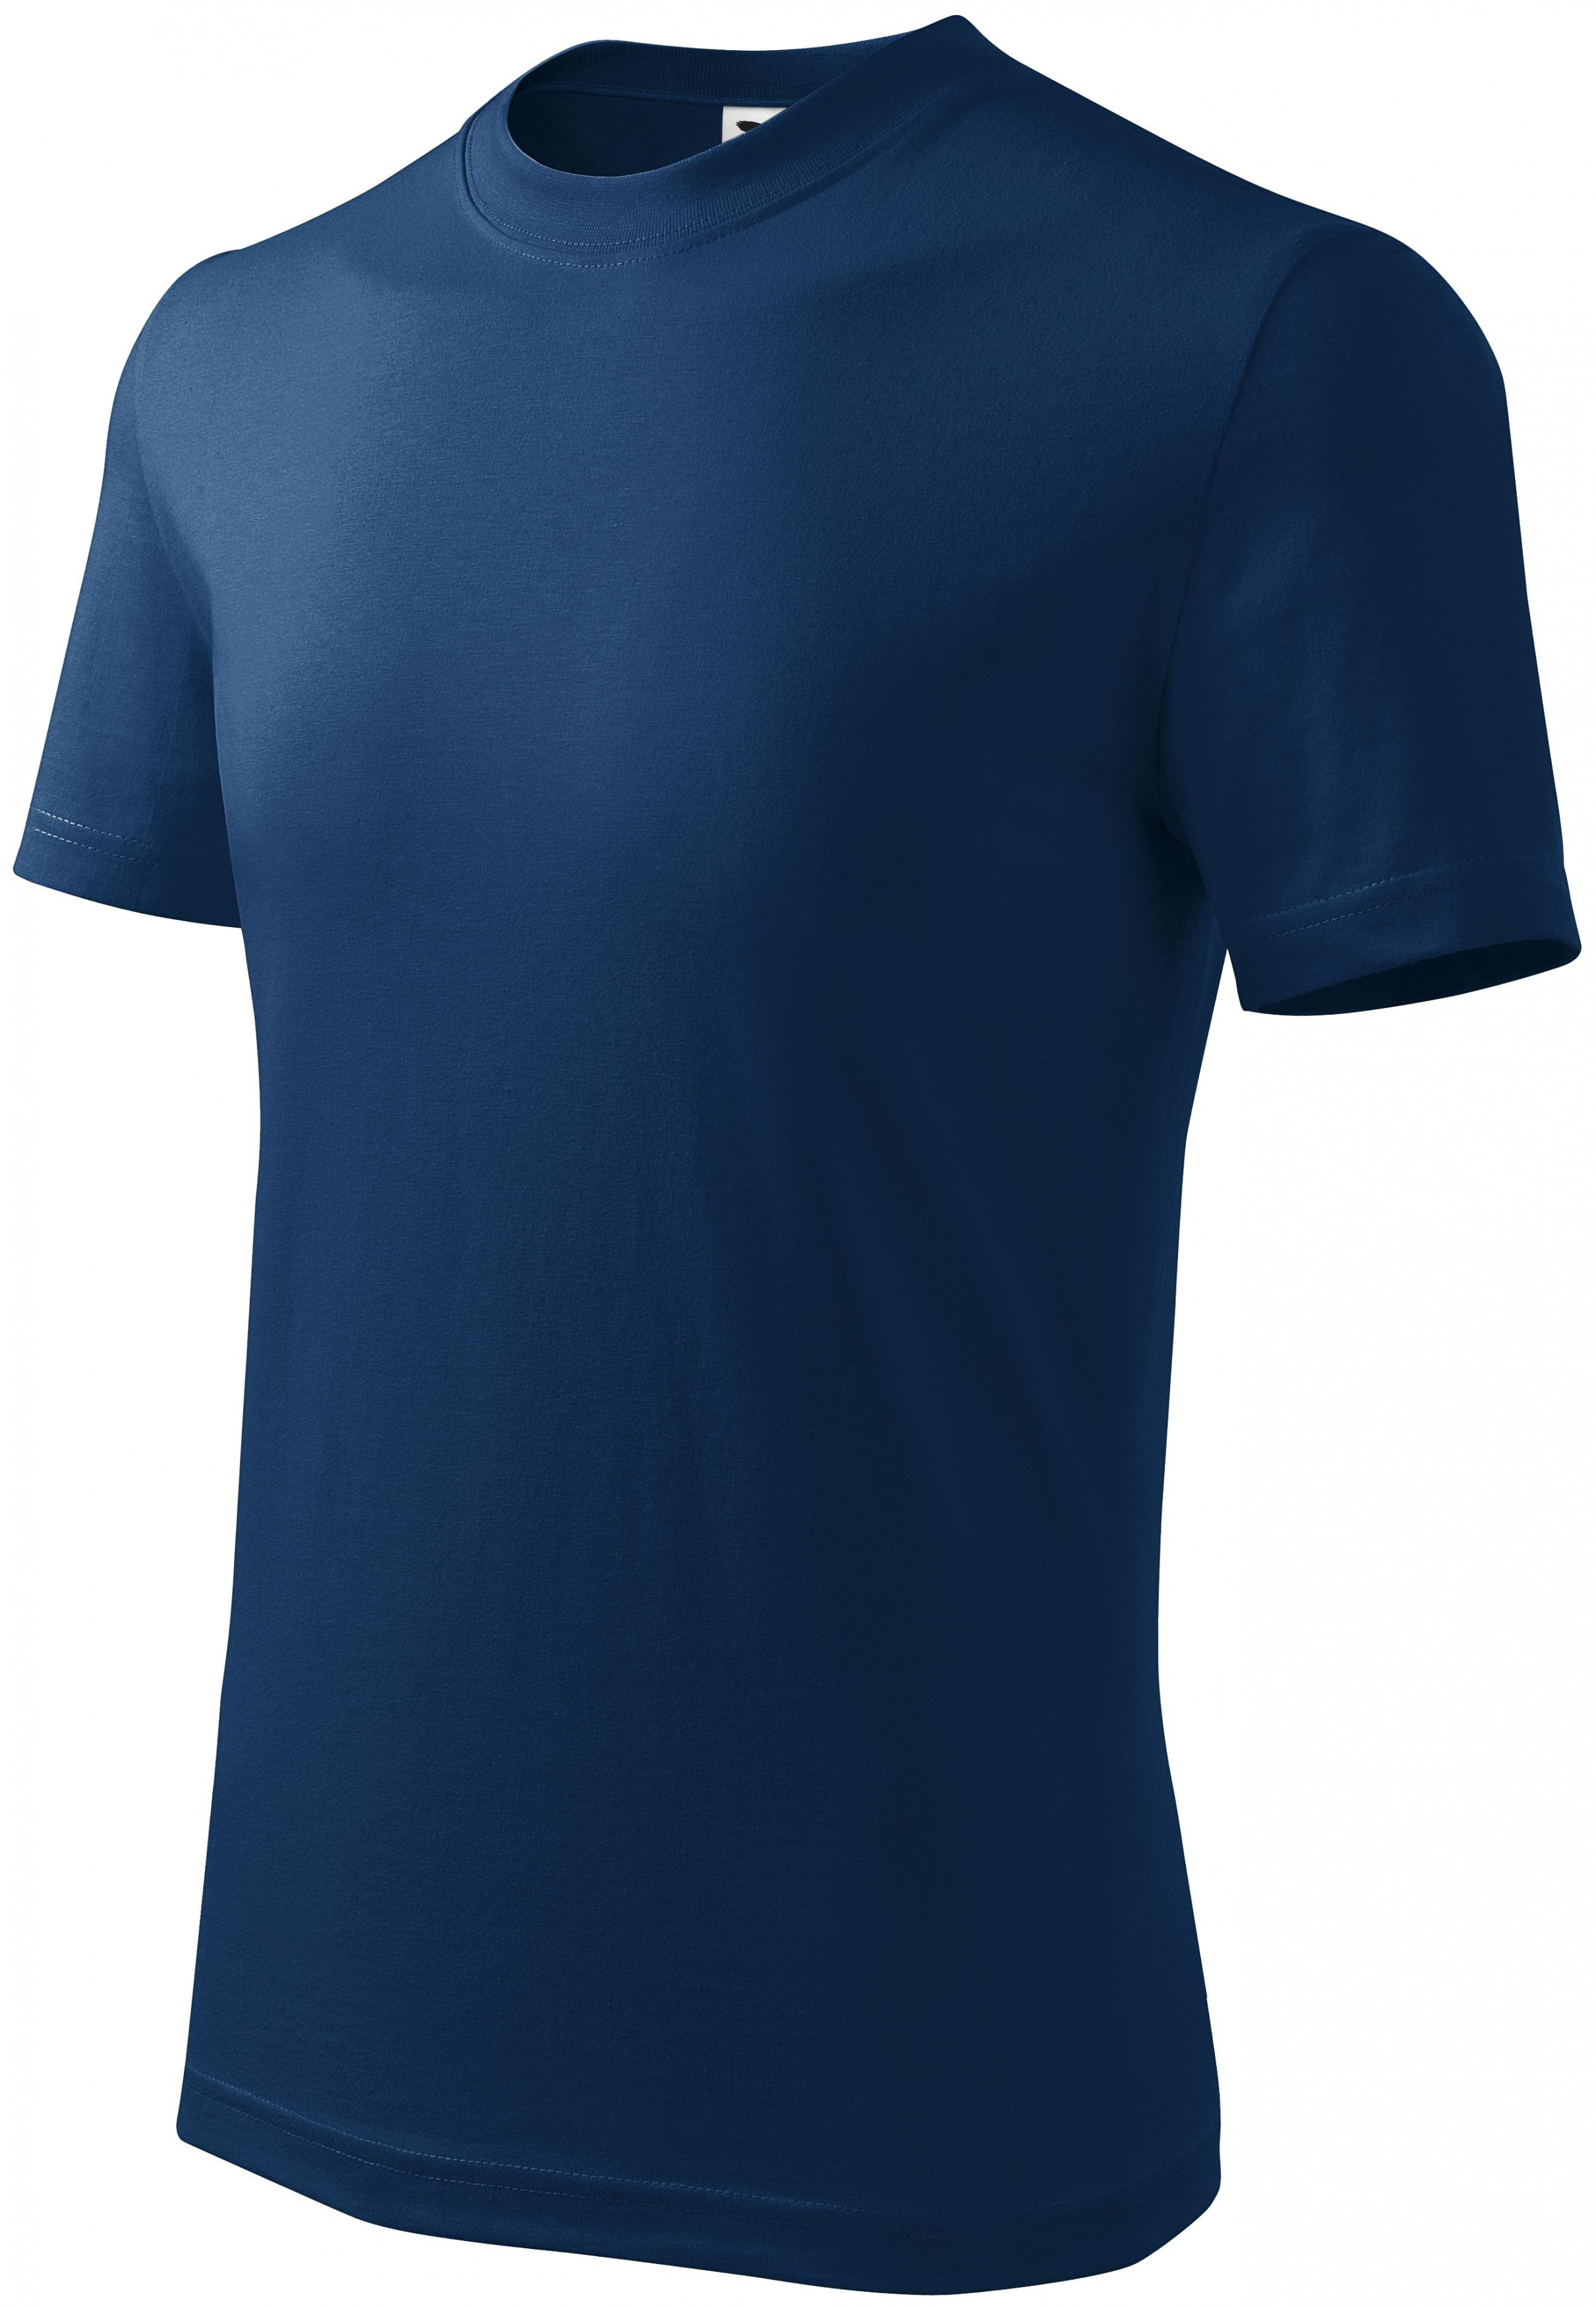 Detské tričko jednoduché, polnočná modrá, 134cm / 8rokov